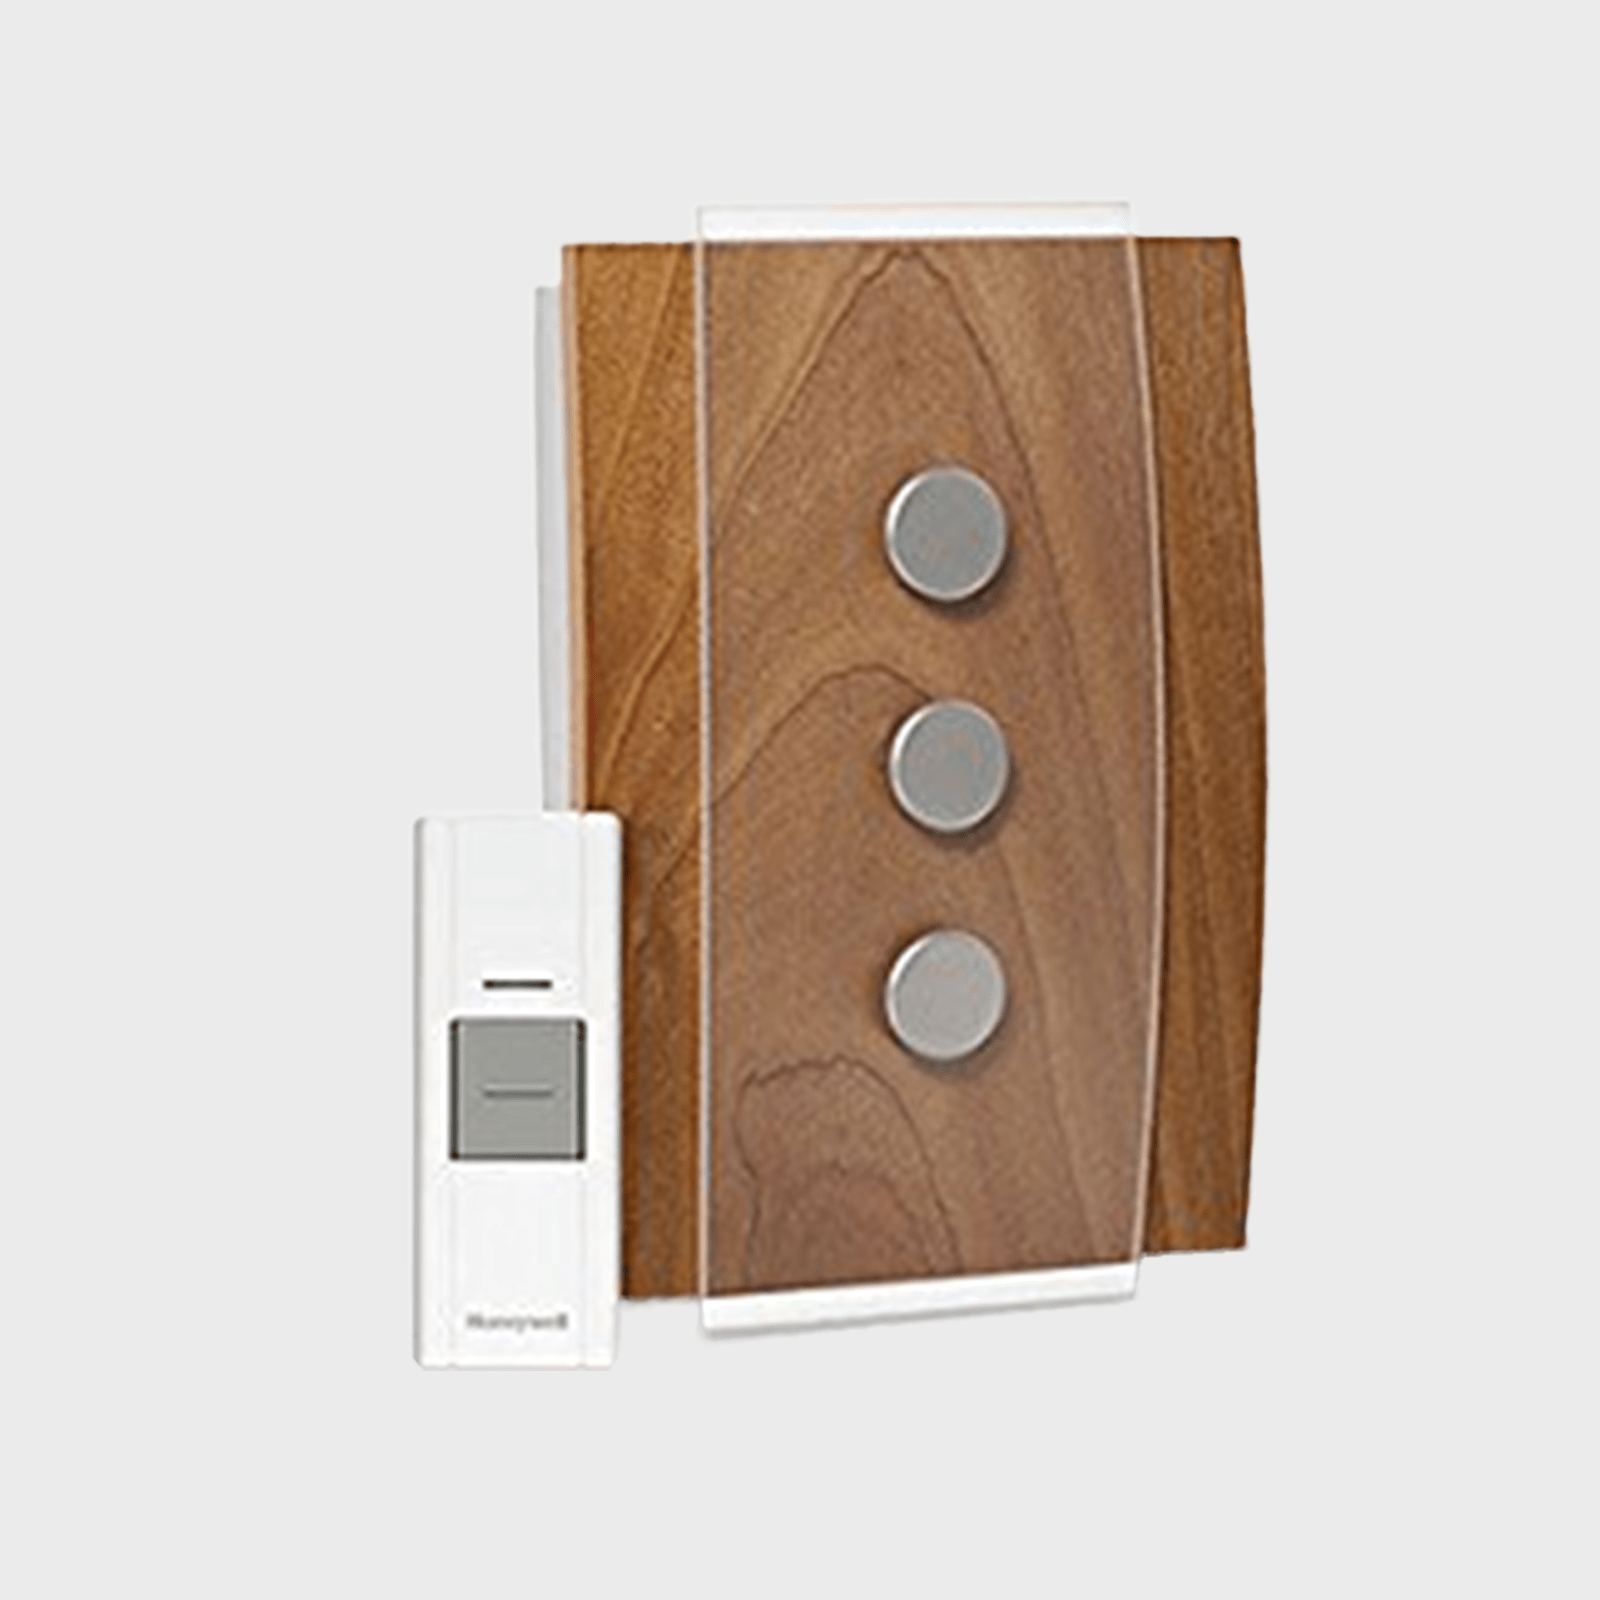 Honeywell Home Decor Wireless Doorbell Door Chime Ecomm Via Amazon